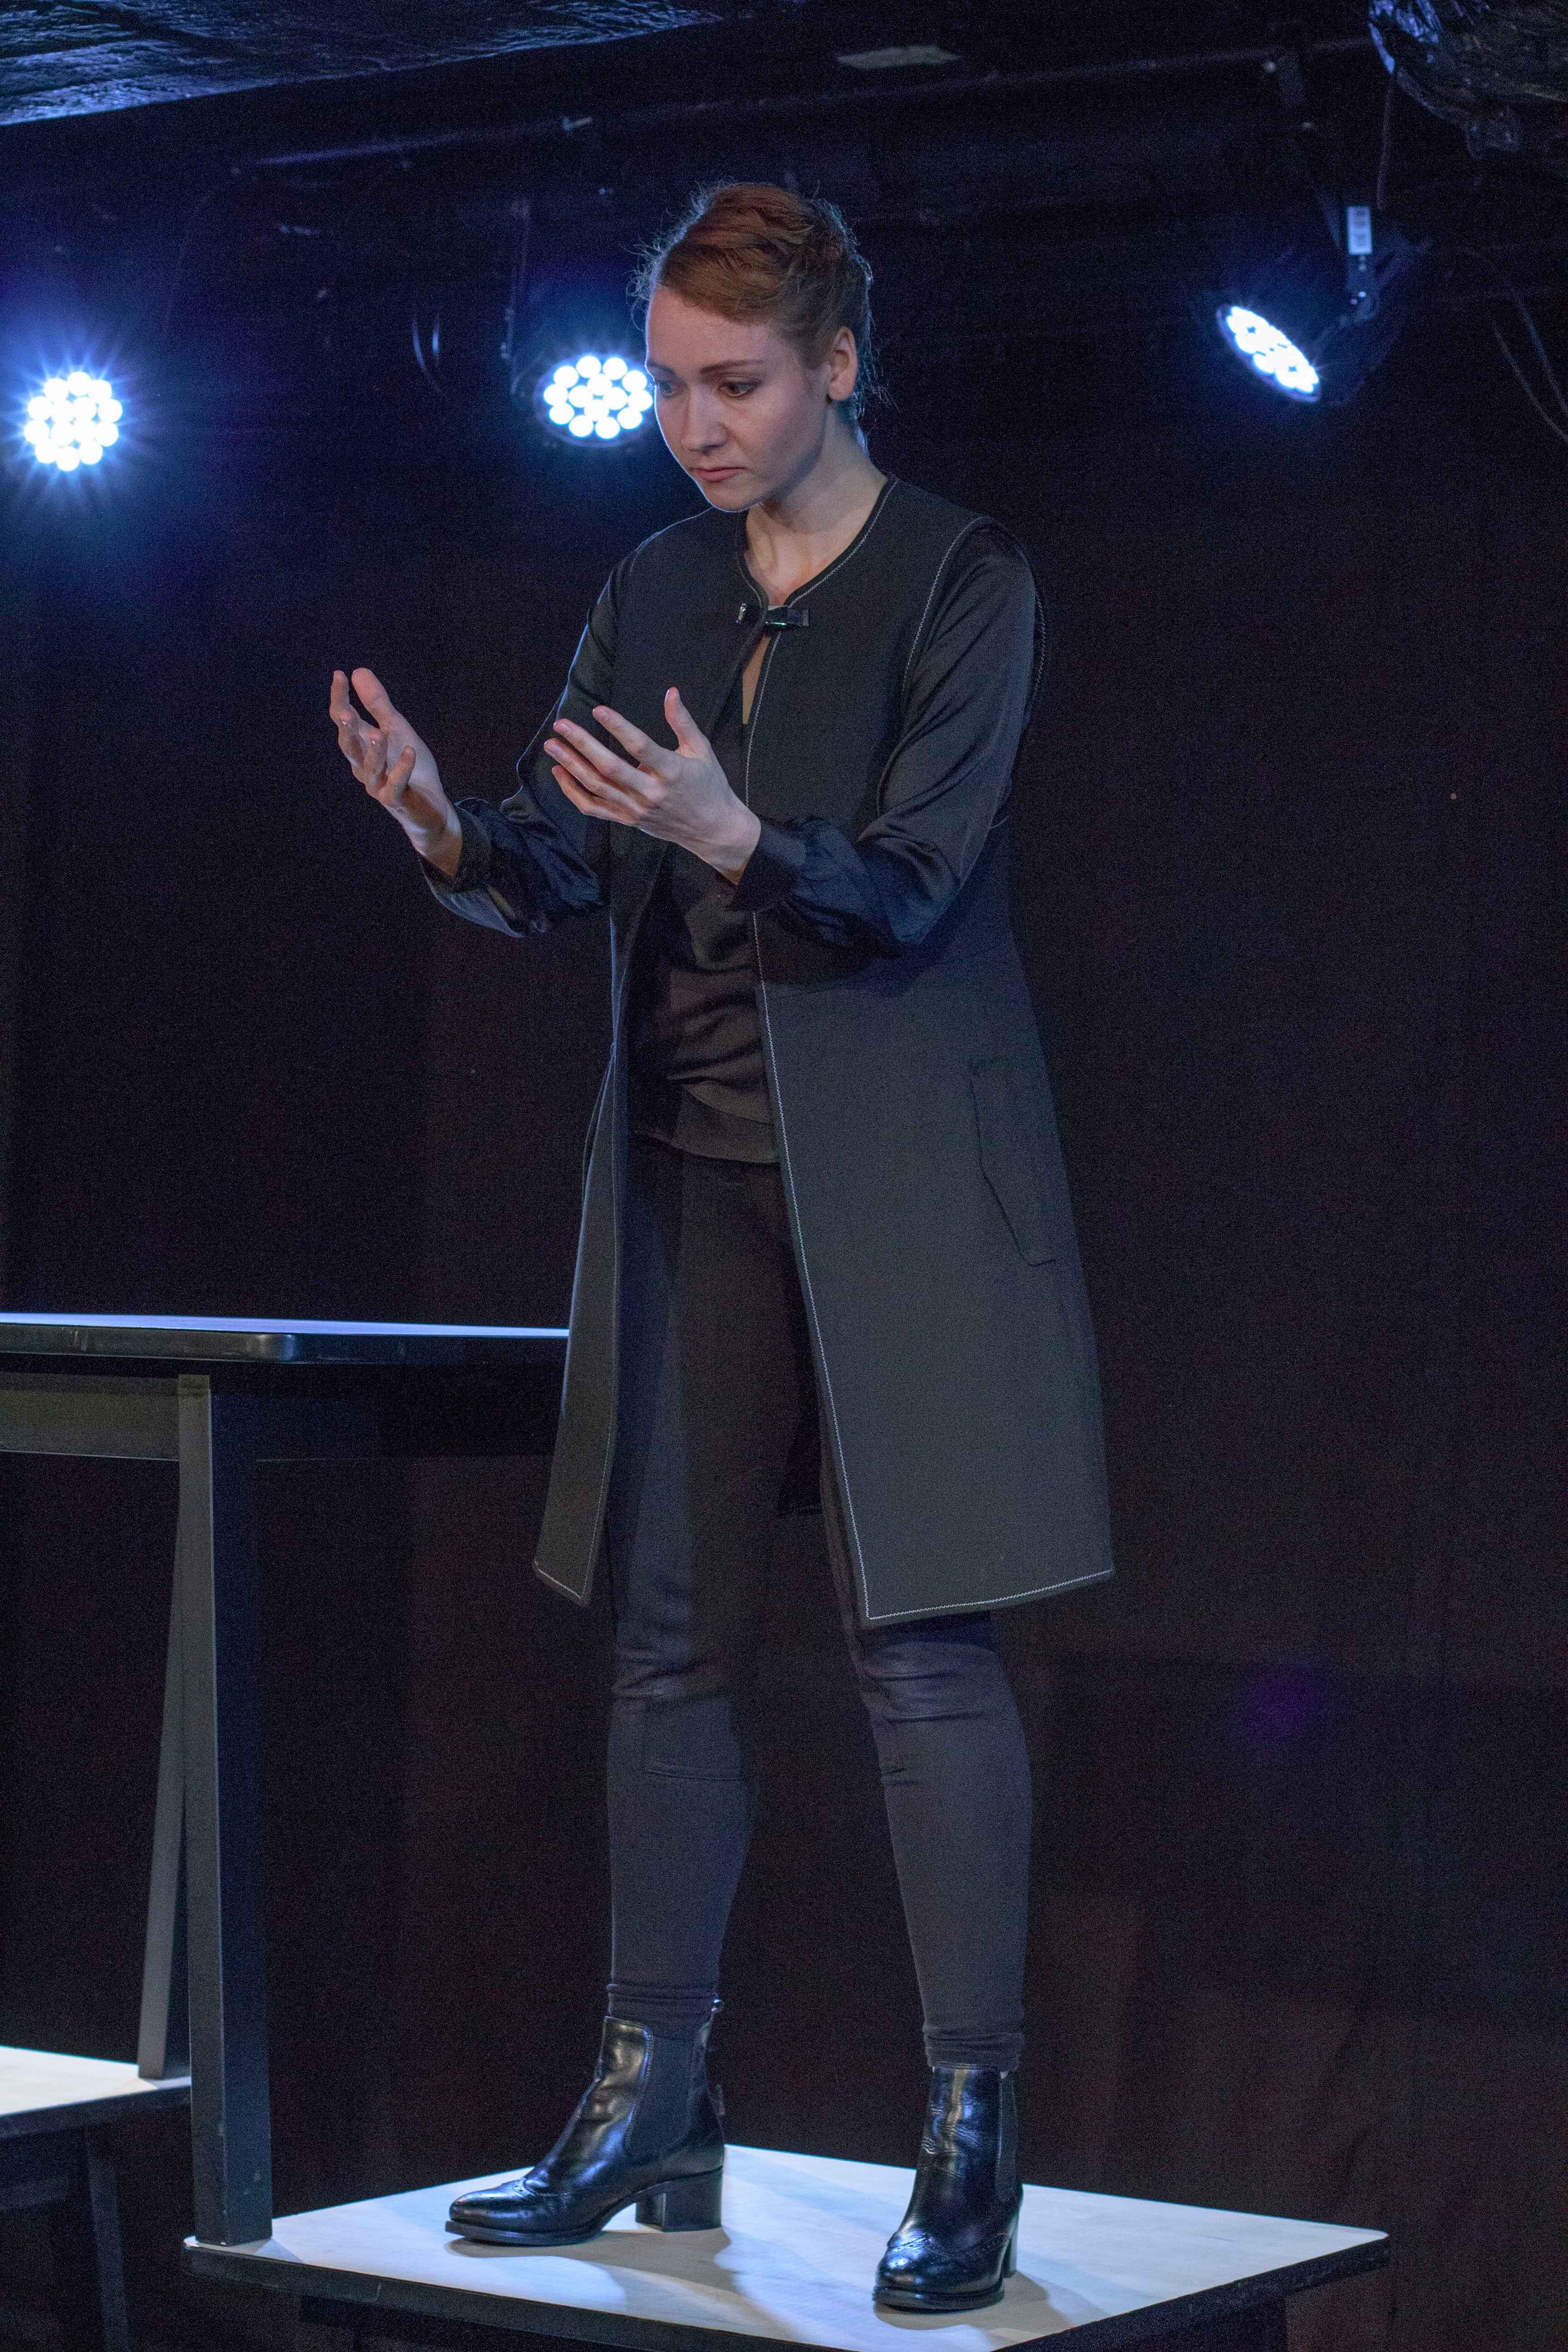 aktorka ubrana na czarno, w czarnym płaszczu stoi na stoliku, trzyma wyciągnięte przed sobą dłonie i patrzy na nie, ciemne tło, pada niebieskie światło